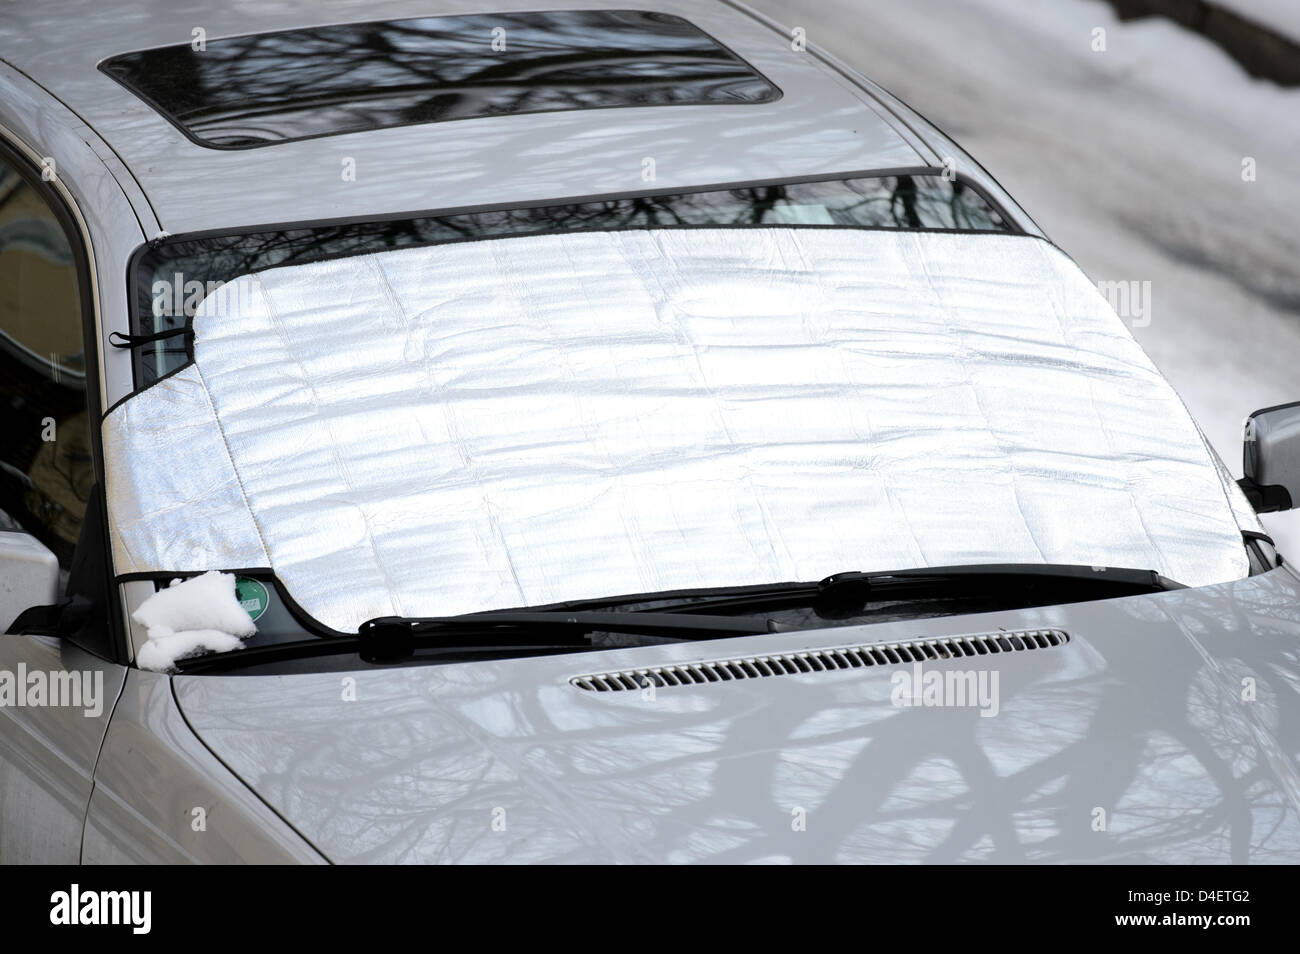 Ein Frostschutzmittel plane wird an der Windschutzscheibe eines Autos  Stockfotografie - Alamy